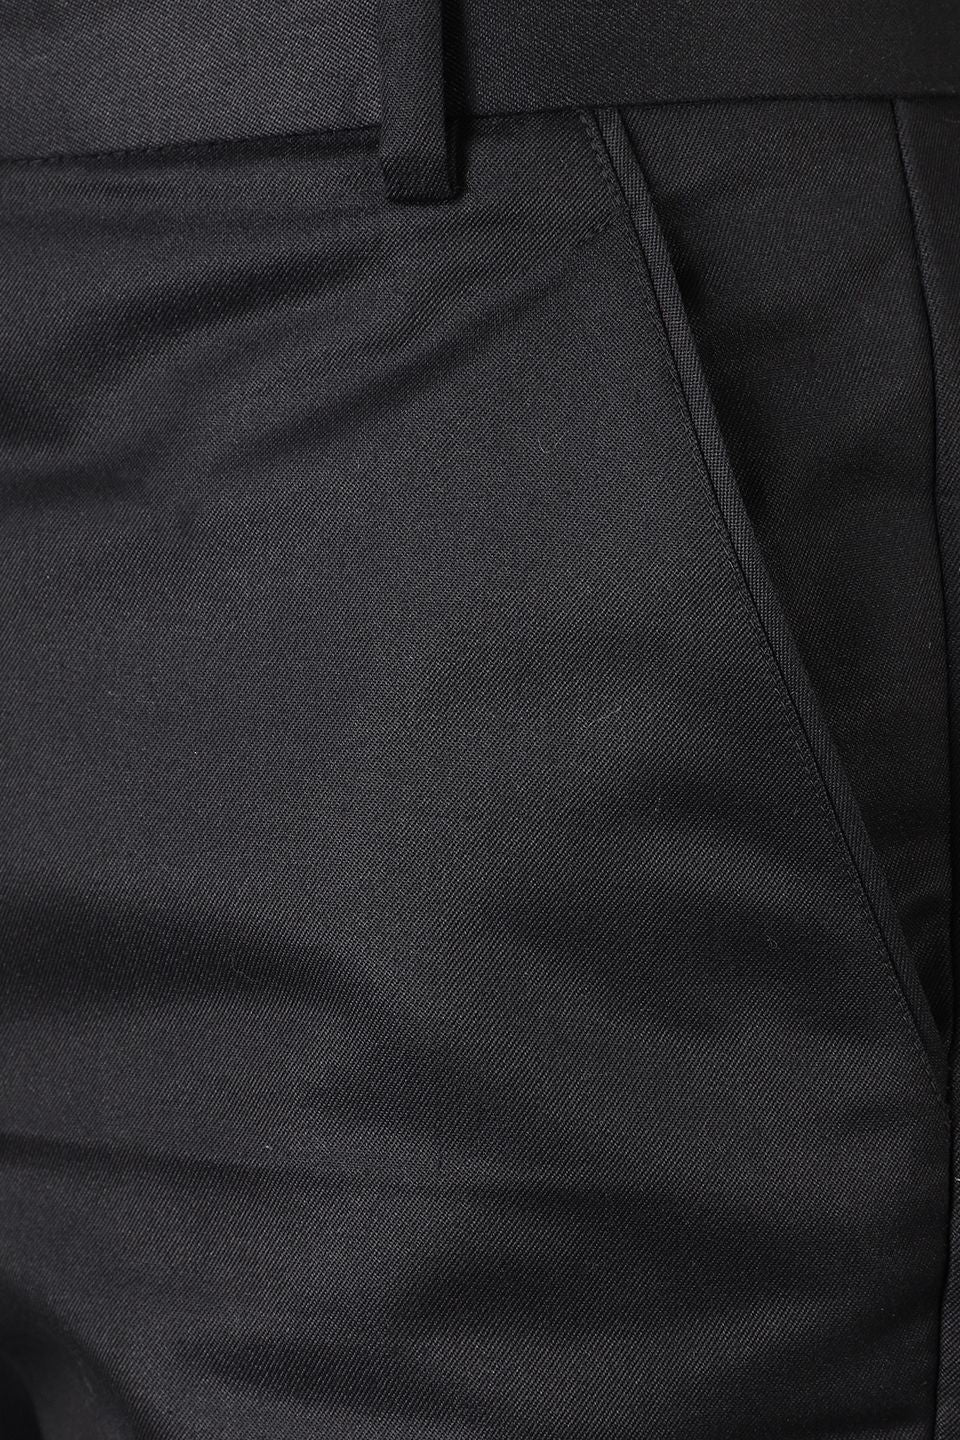 Tuxedo Black two piece Suit